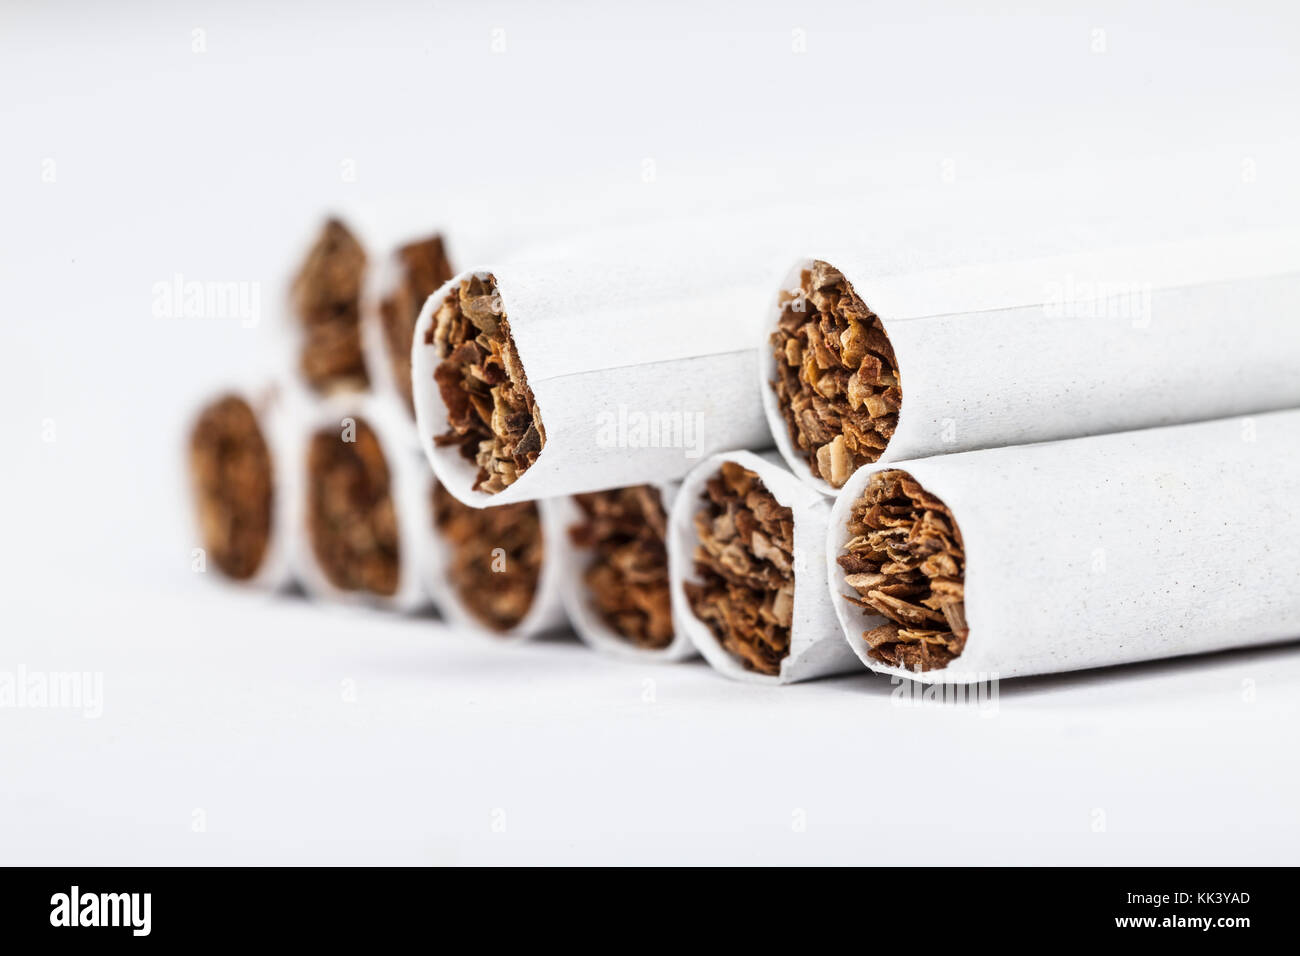 Filter cigarettes Stock Photo